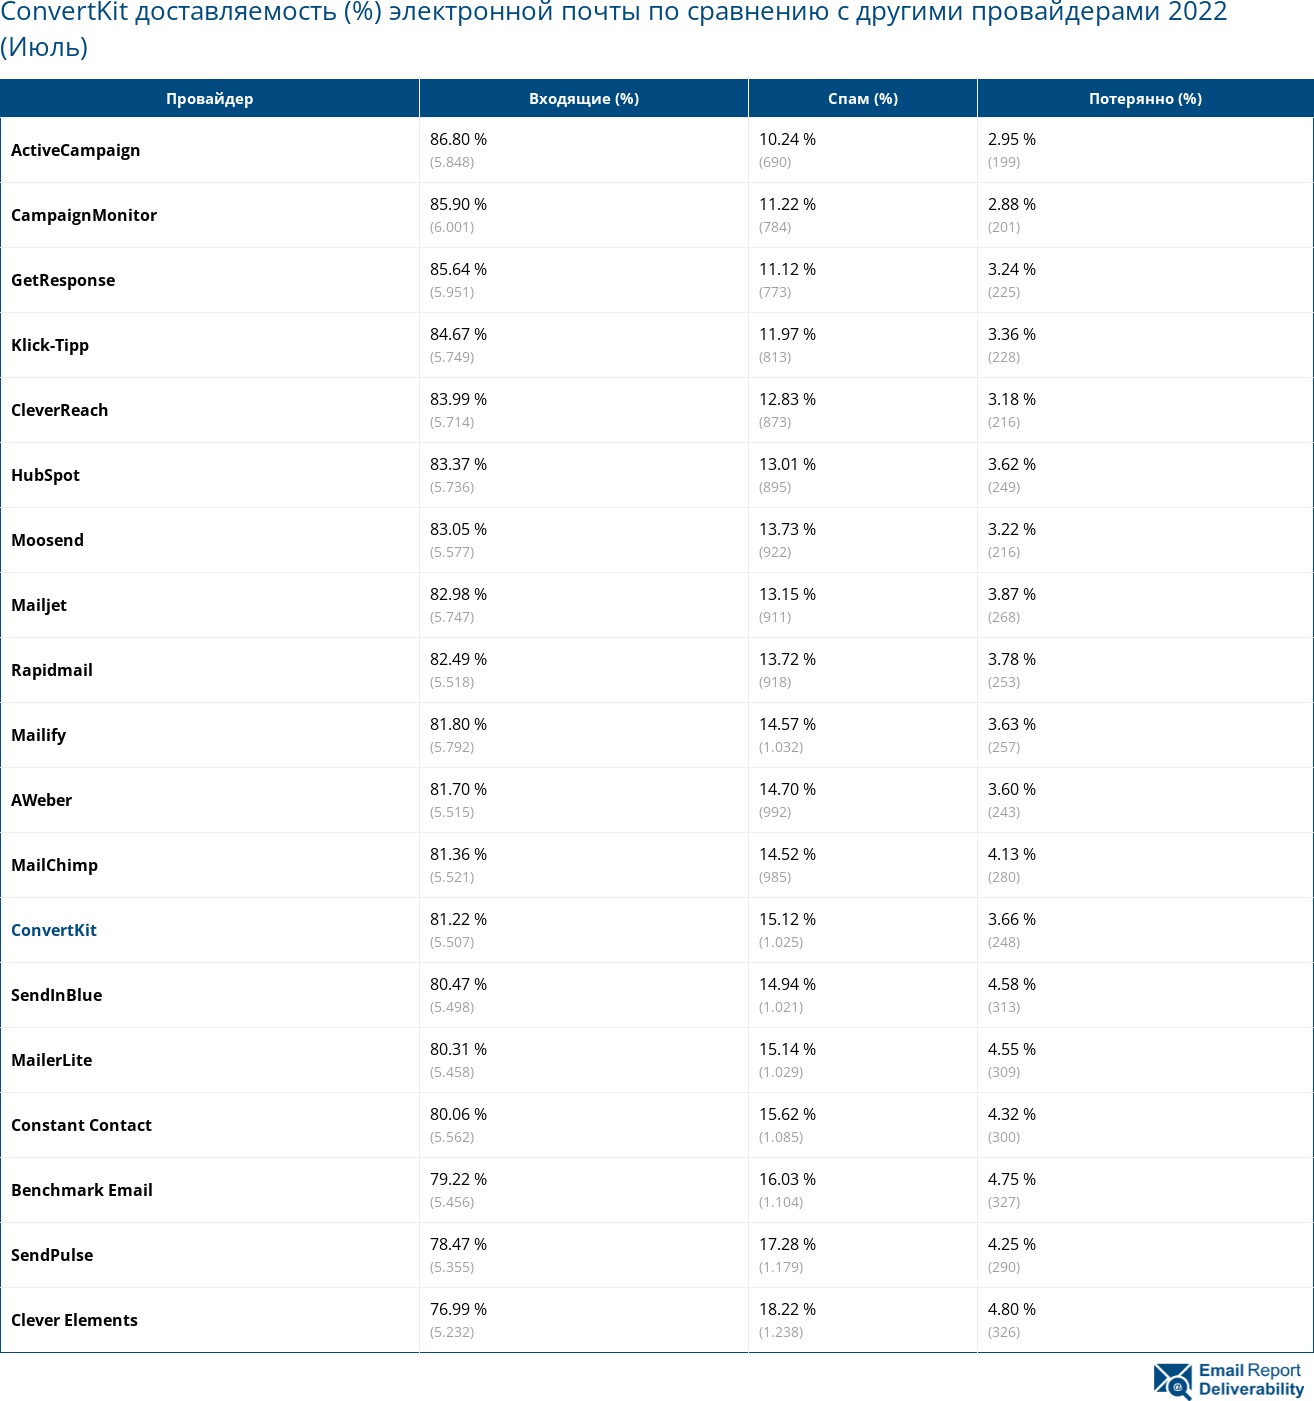 ConvertKit доставляемость (%) электронной почты по сравнению с другими провайдерами 2022 (Июль)